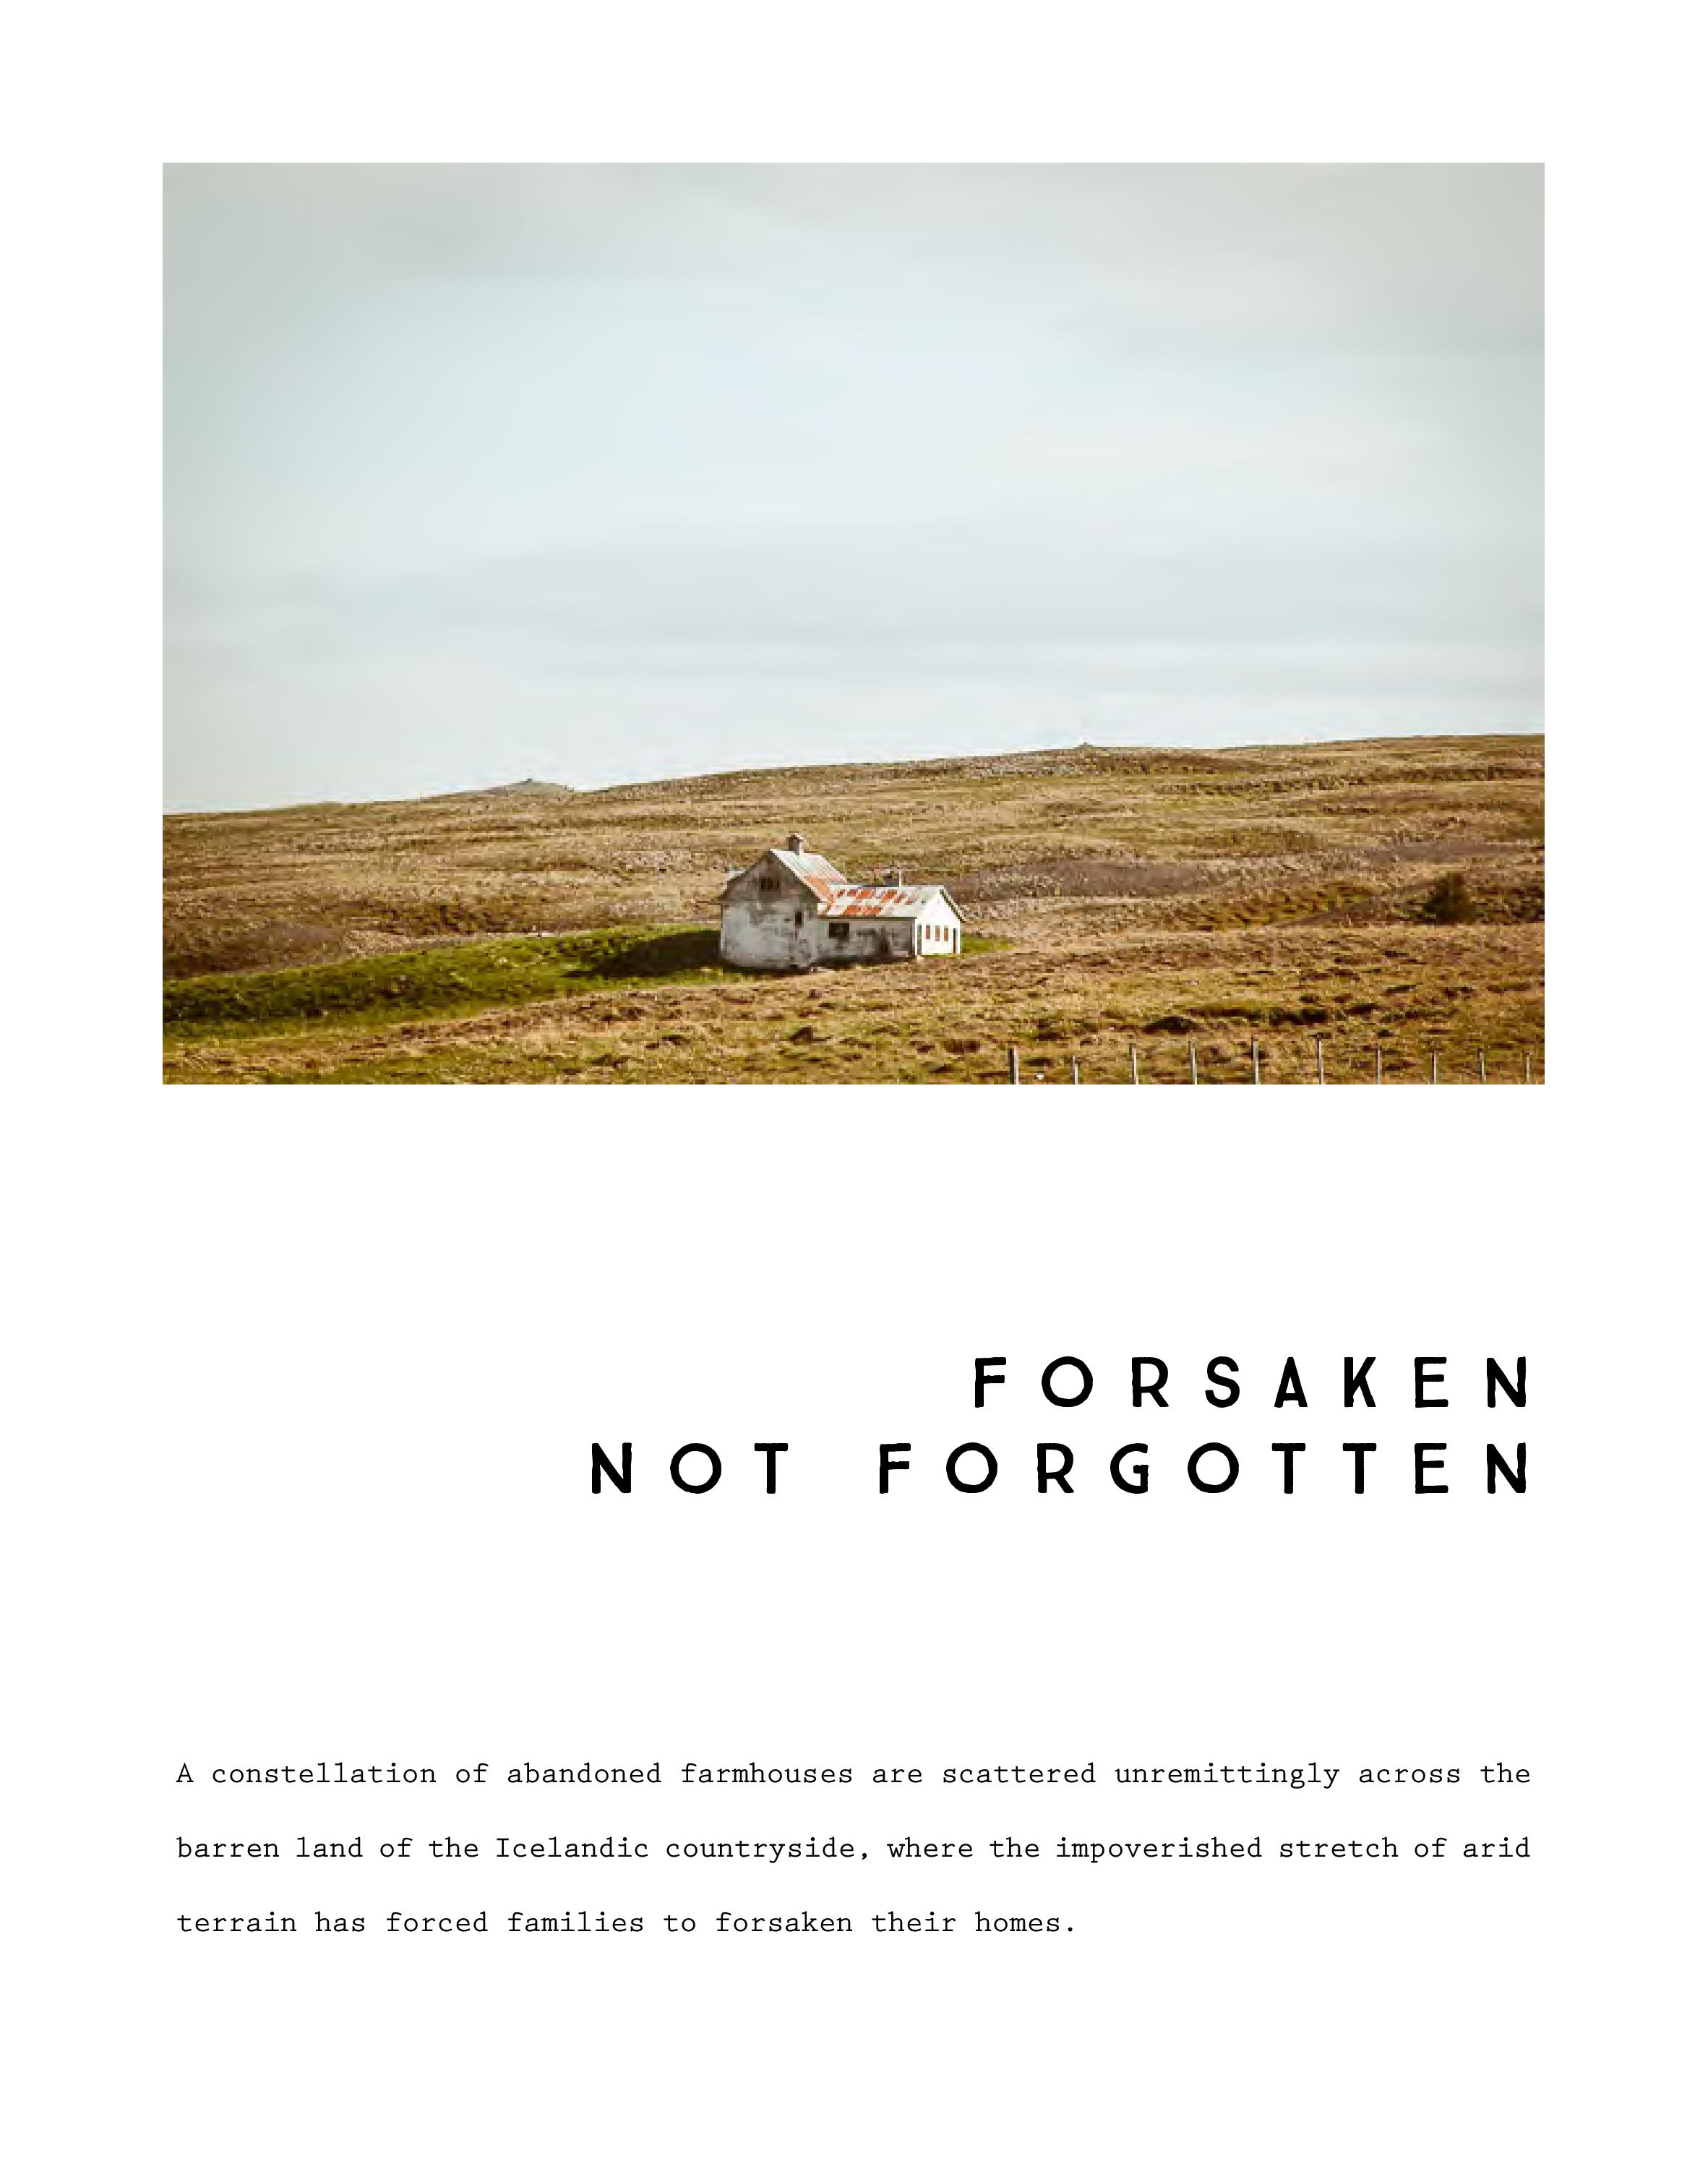 ForsakenNotForgotten-Catalog-HEYDT-page-004.jpg